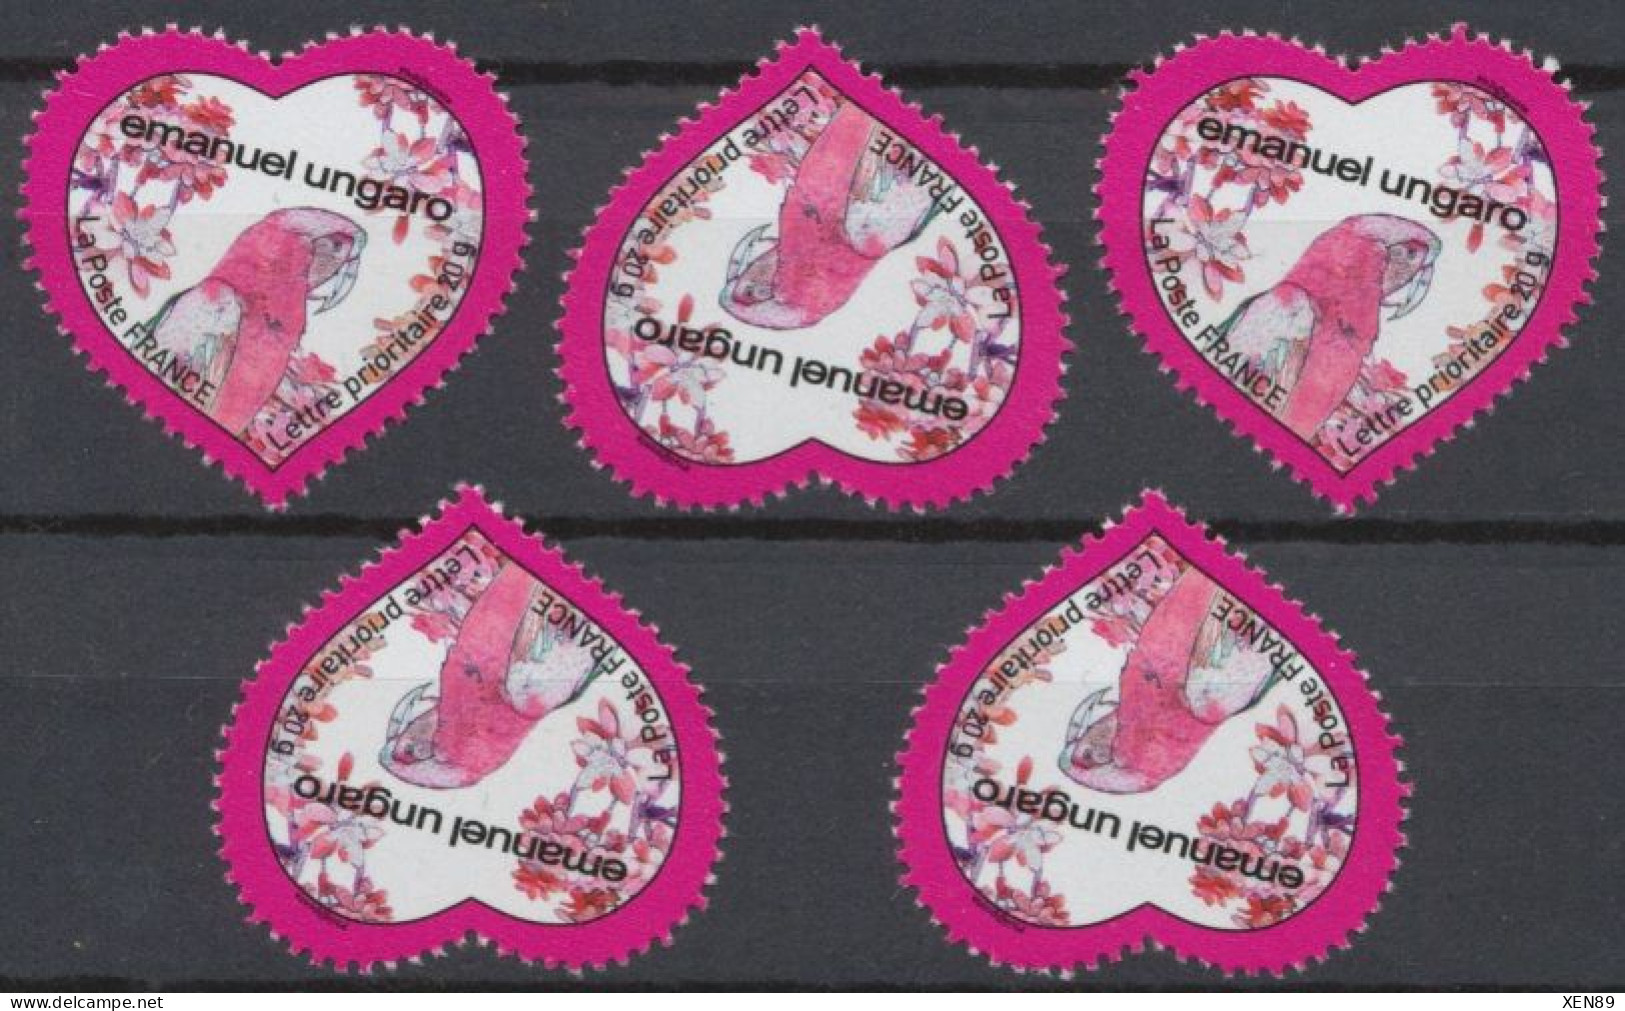 2009 - 4327 - Saint-Valentin - Cœur 2009 De La Maison De Couture Emmanuel Ungaro (issus Du BF 127) - Unused Stamps